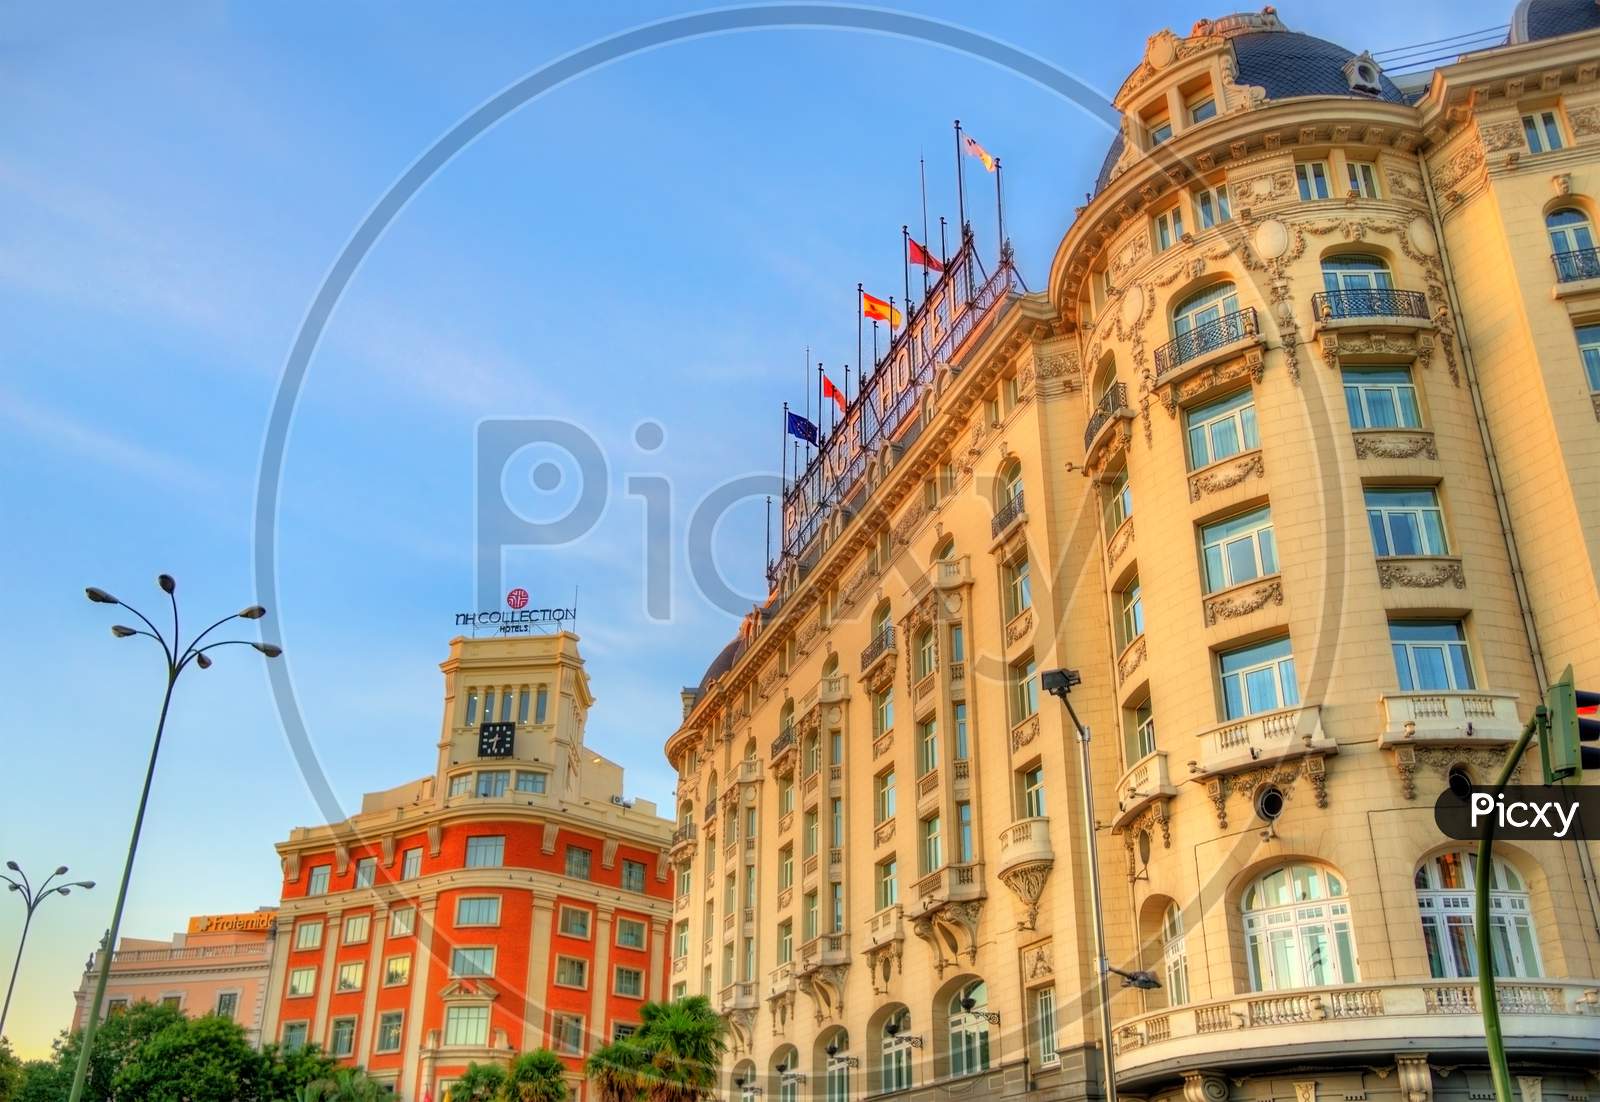 The Westin Palace Hotel On Plaza De Canovas Del Castillo In Madrid.